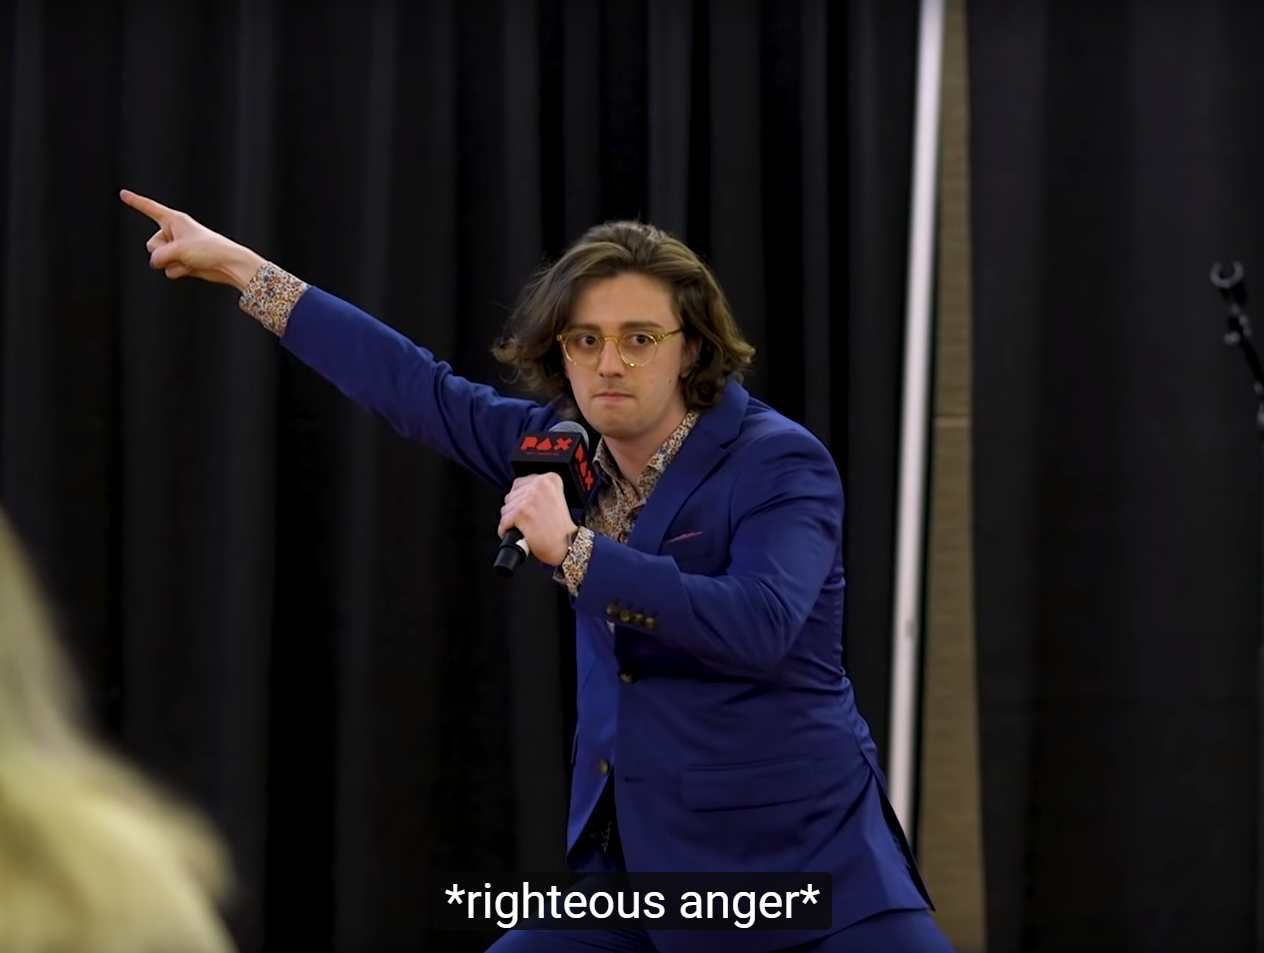 Righteous Anger Blank Meme Template